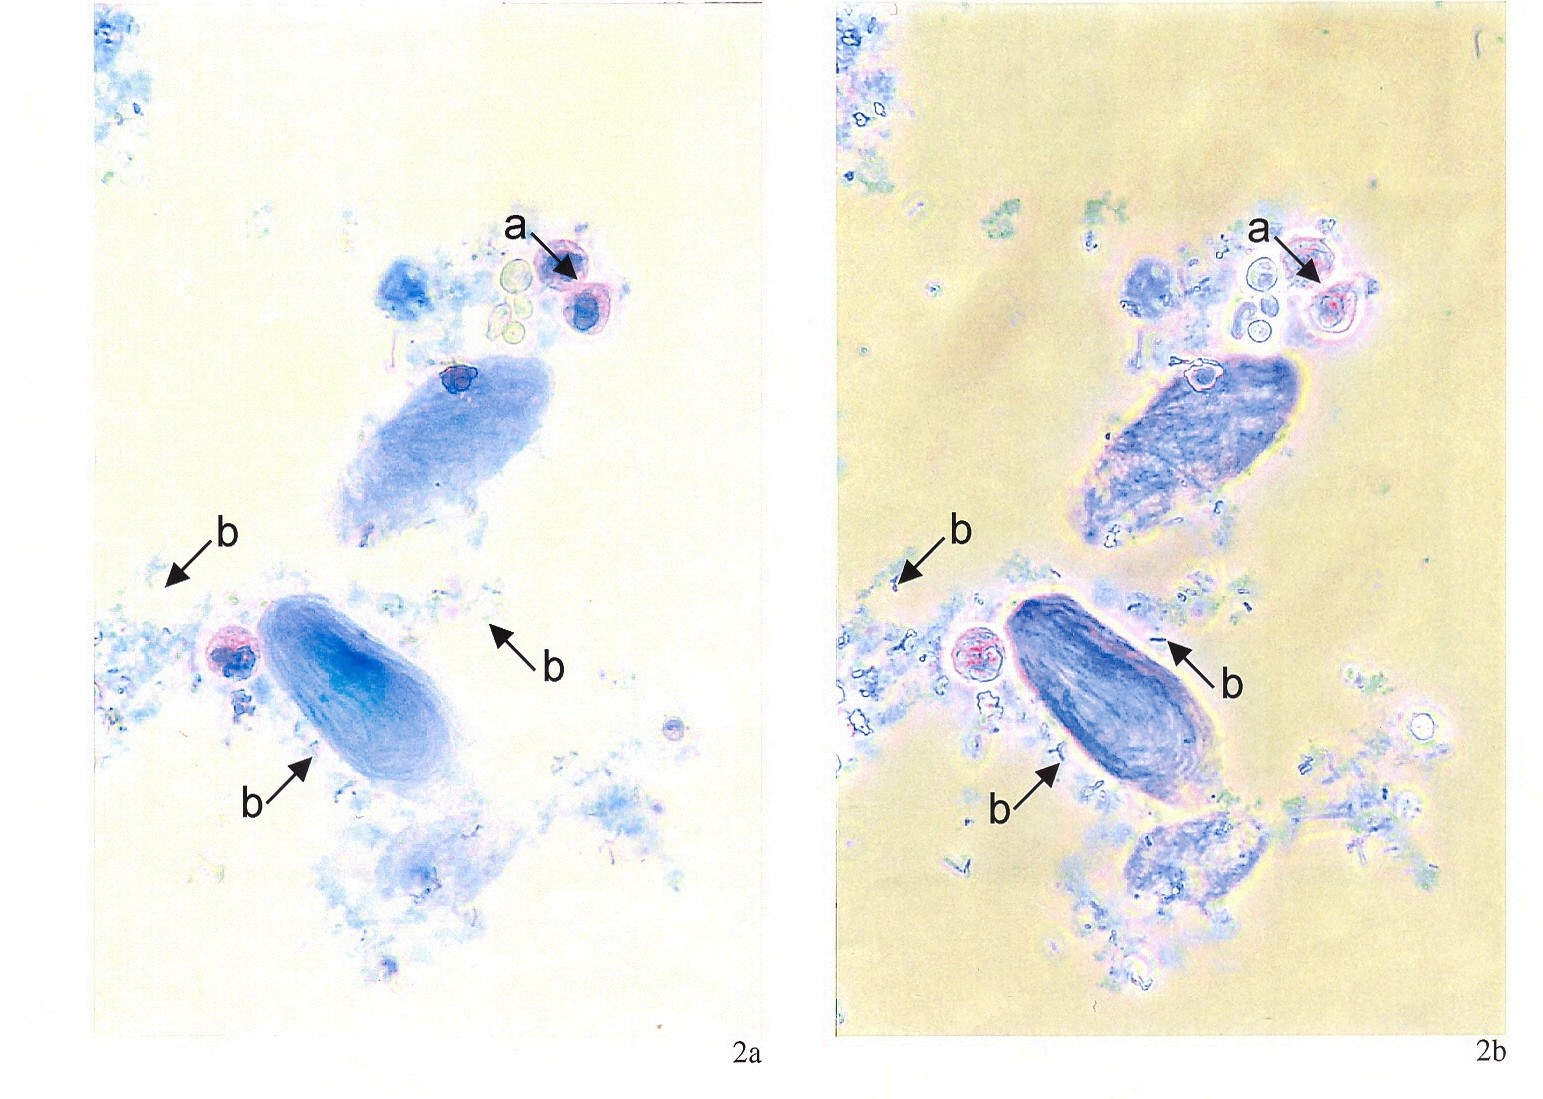 Granulocytv (šipka a) s vícelaločnatými (segmentovanými) jádry